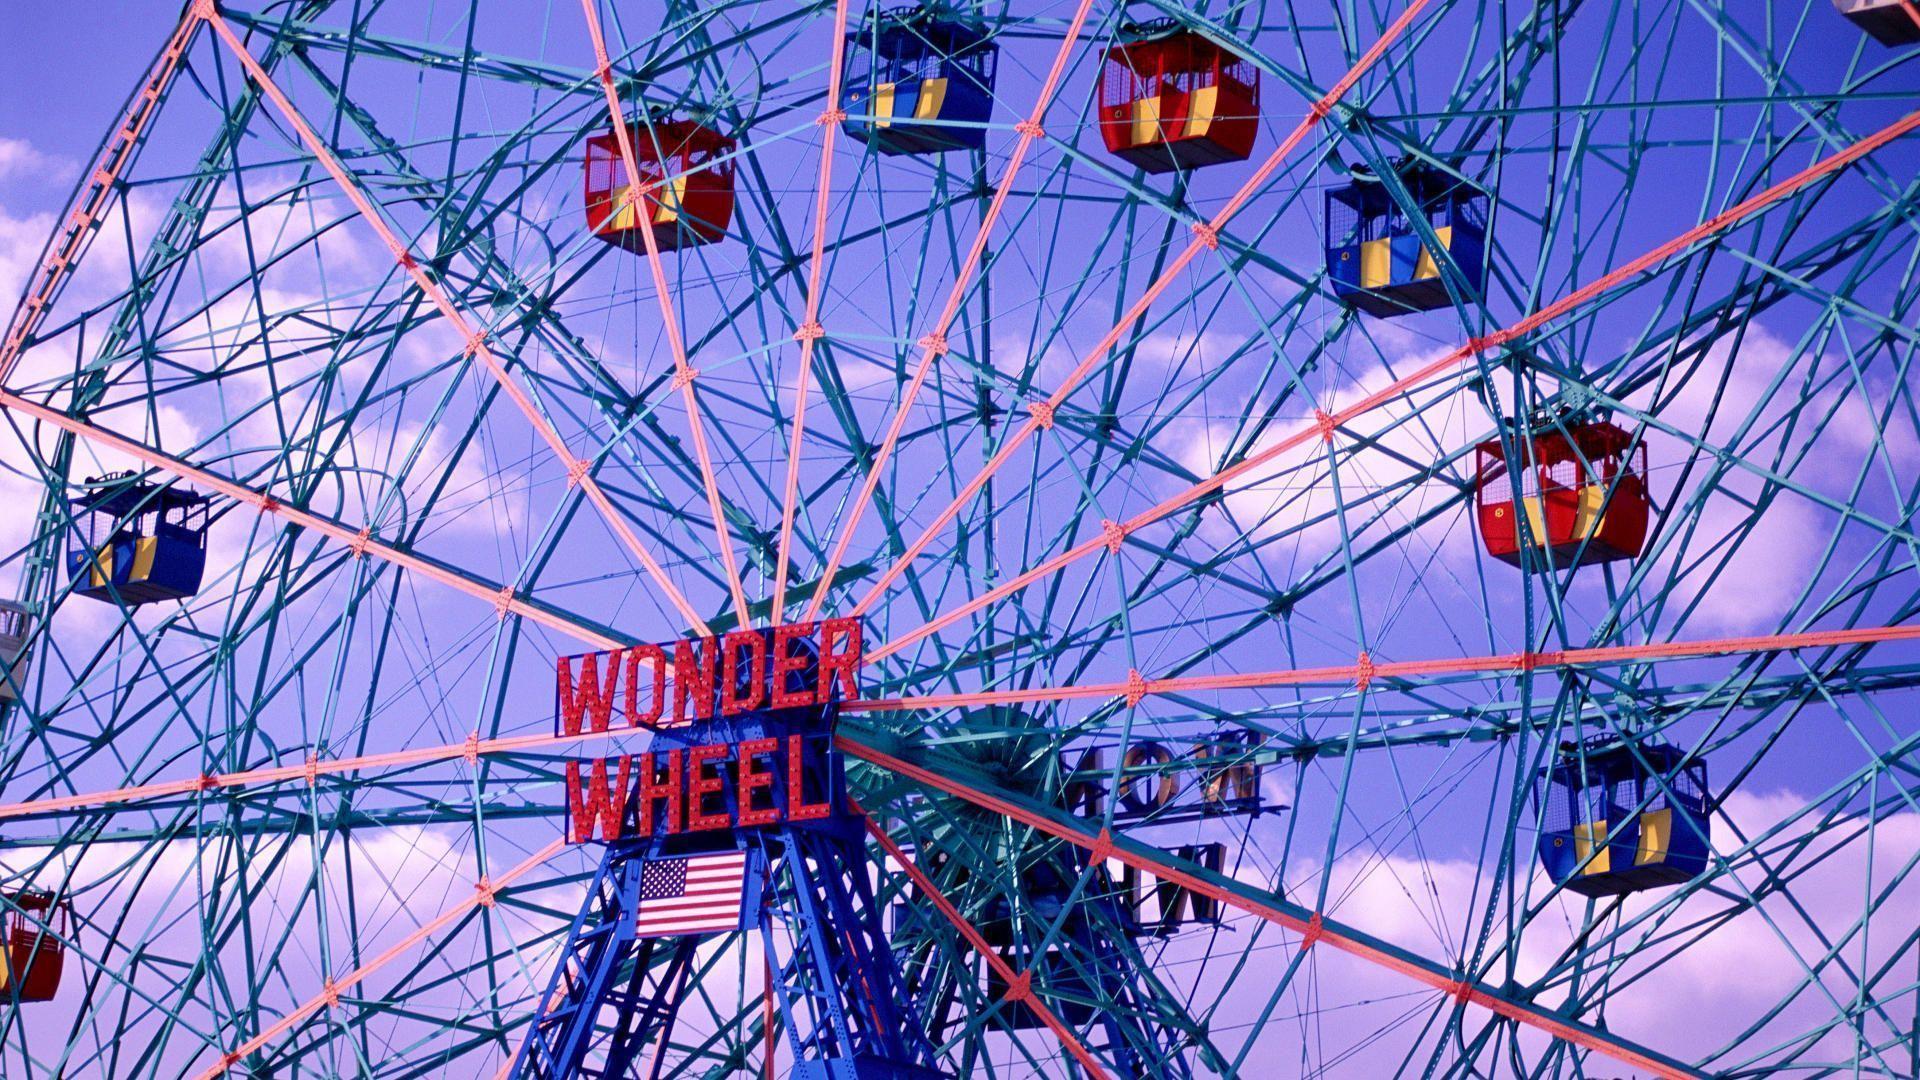 The Wonder Wheel Coney Island Brooklyn New York Free